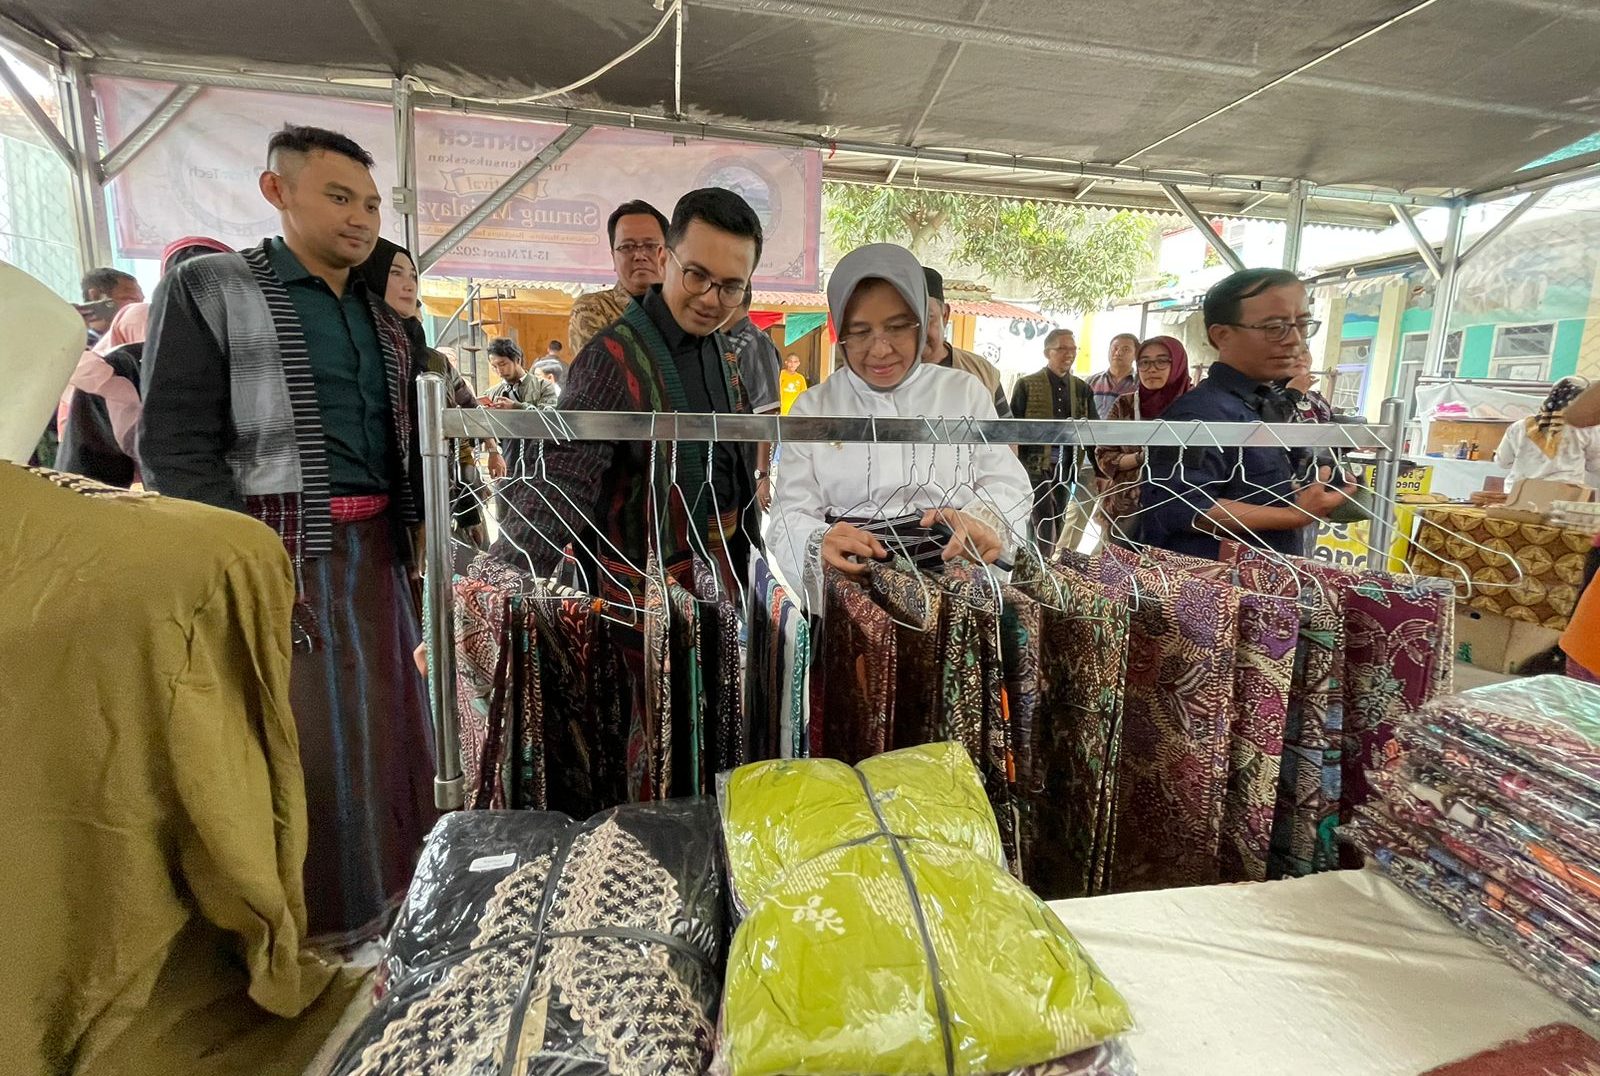 Di Kecamatan Majalaya Kabupaten Bandung memang banyak terdapat pabrik tekstile. Dulu masyarakat mengambil sisa-sisa kain dan benang